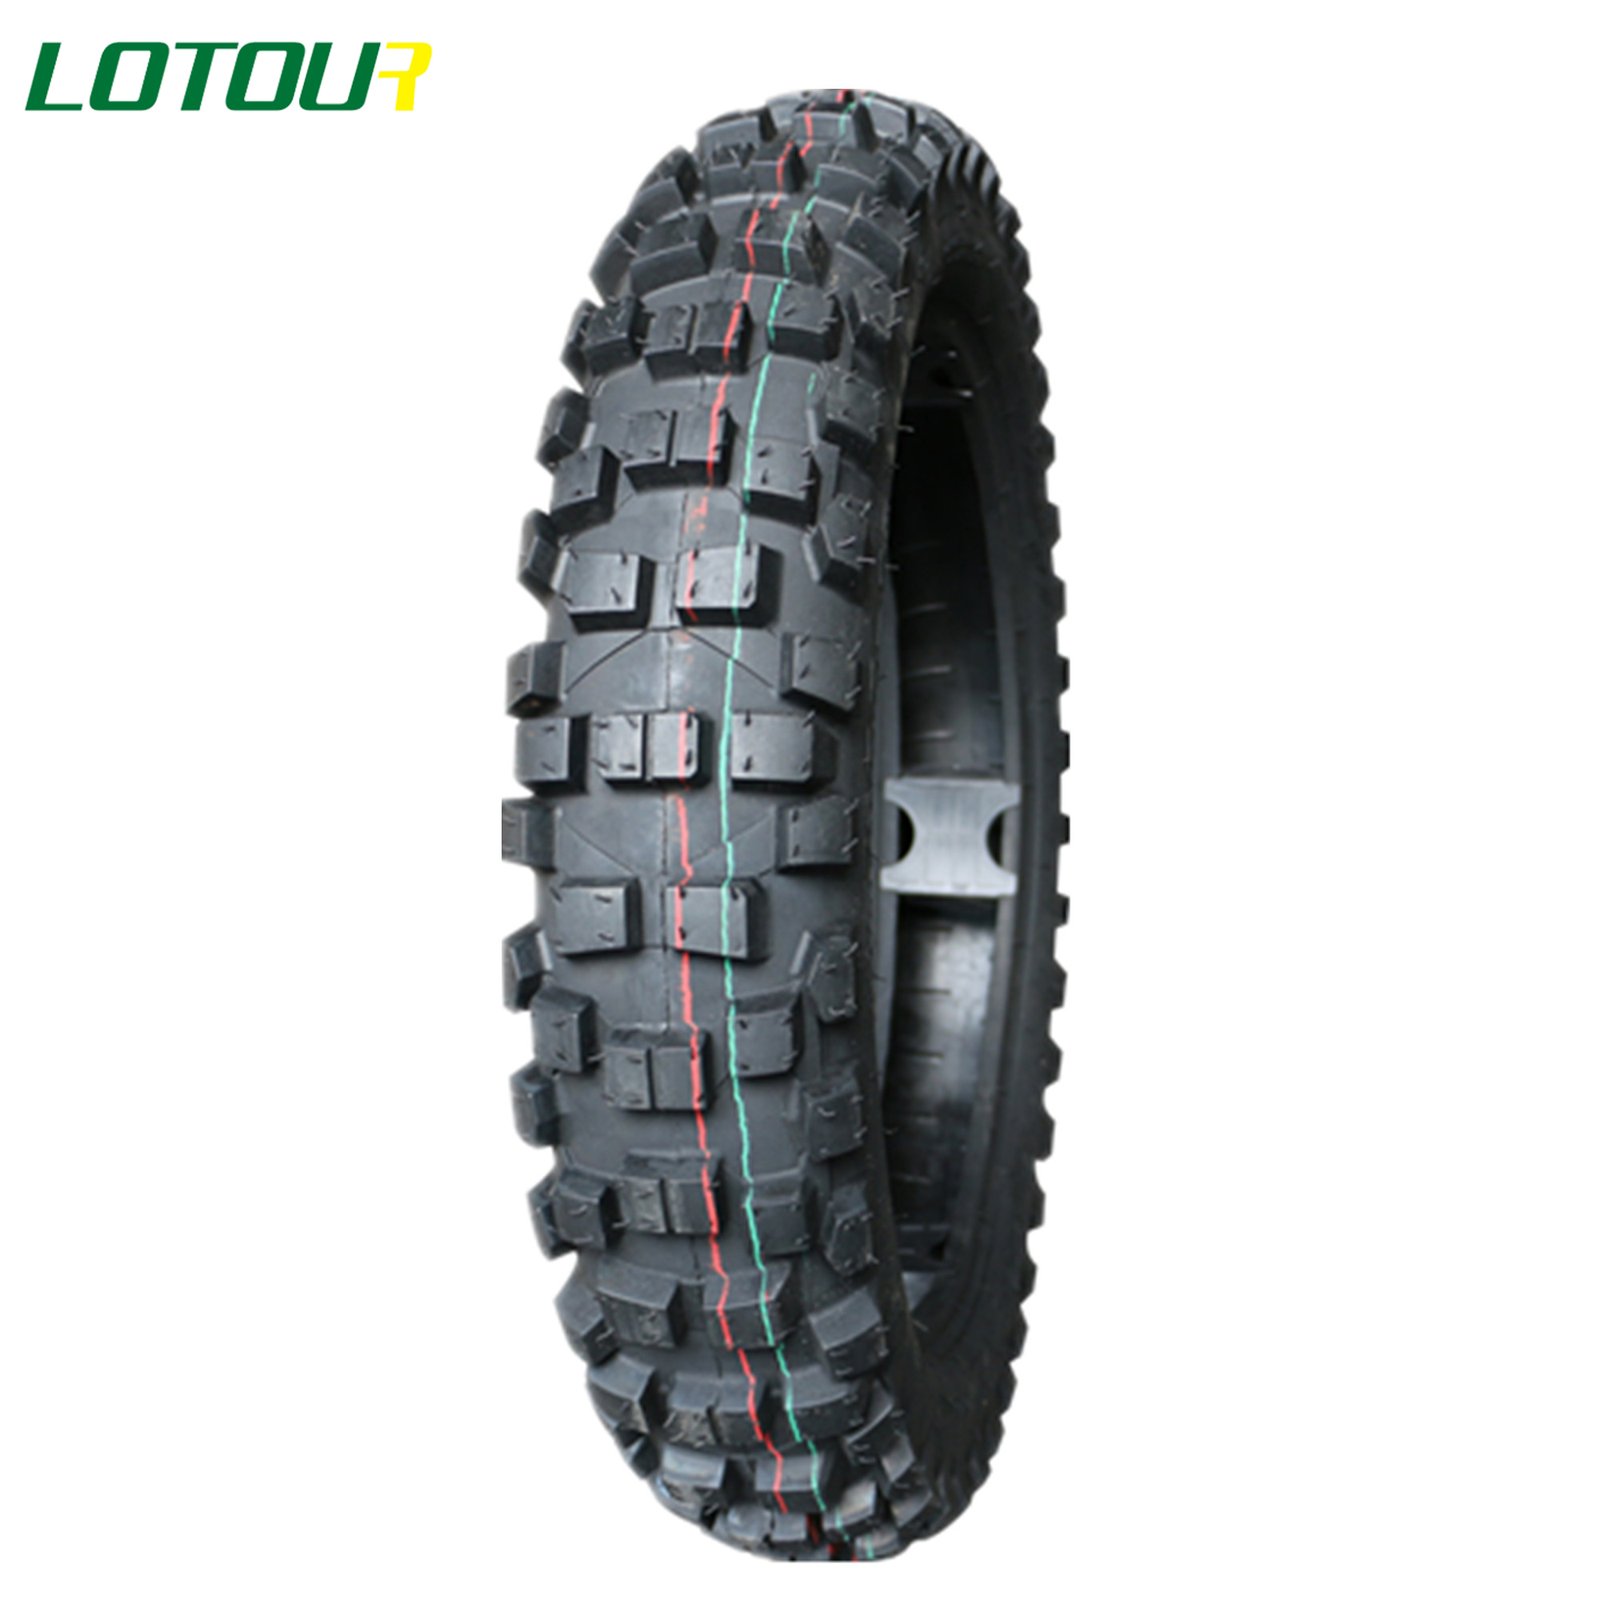 Lotour Tire M2109